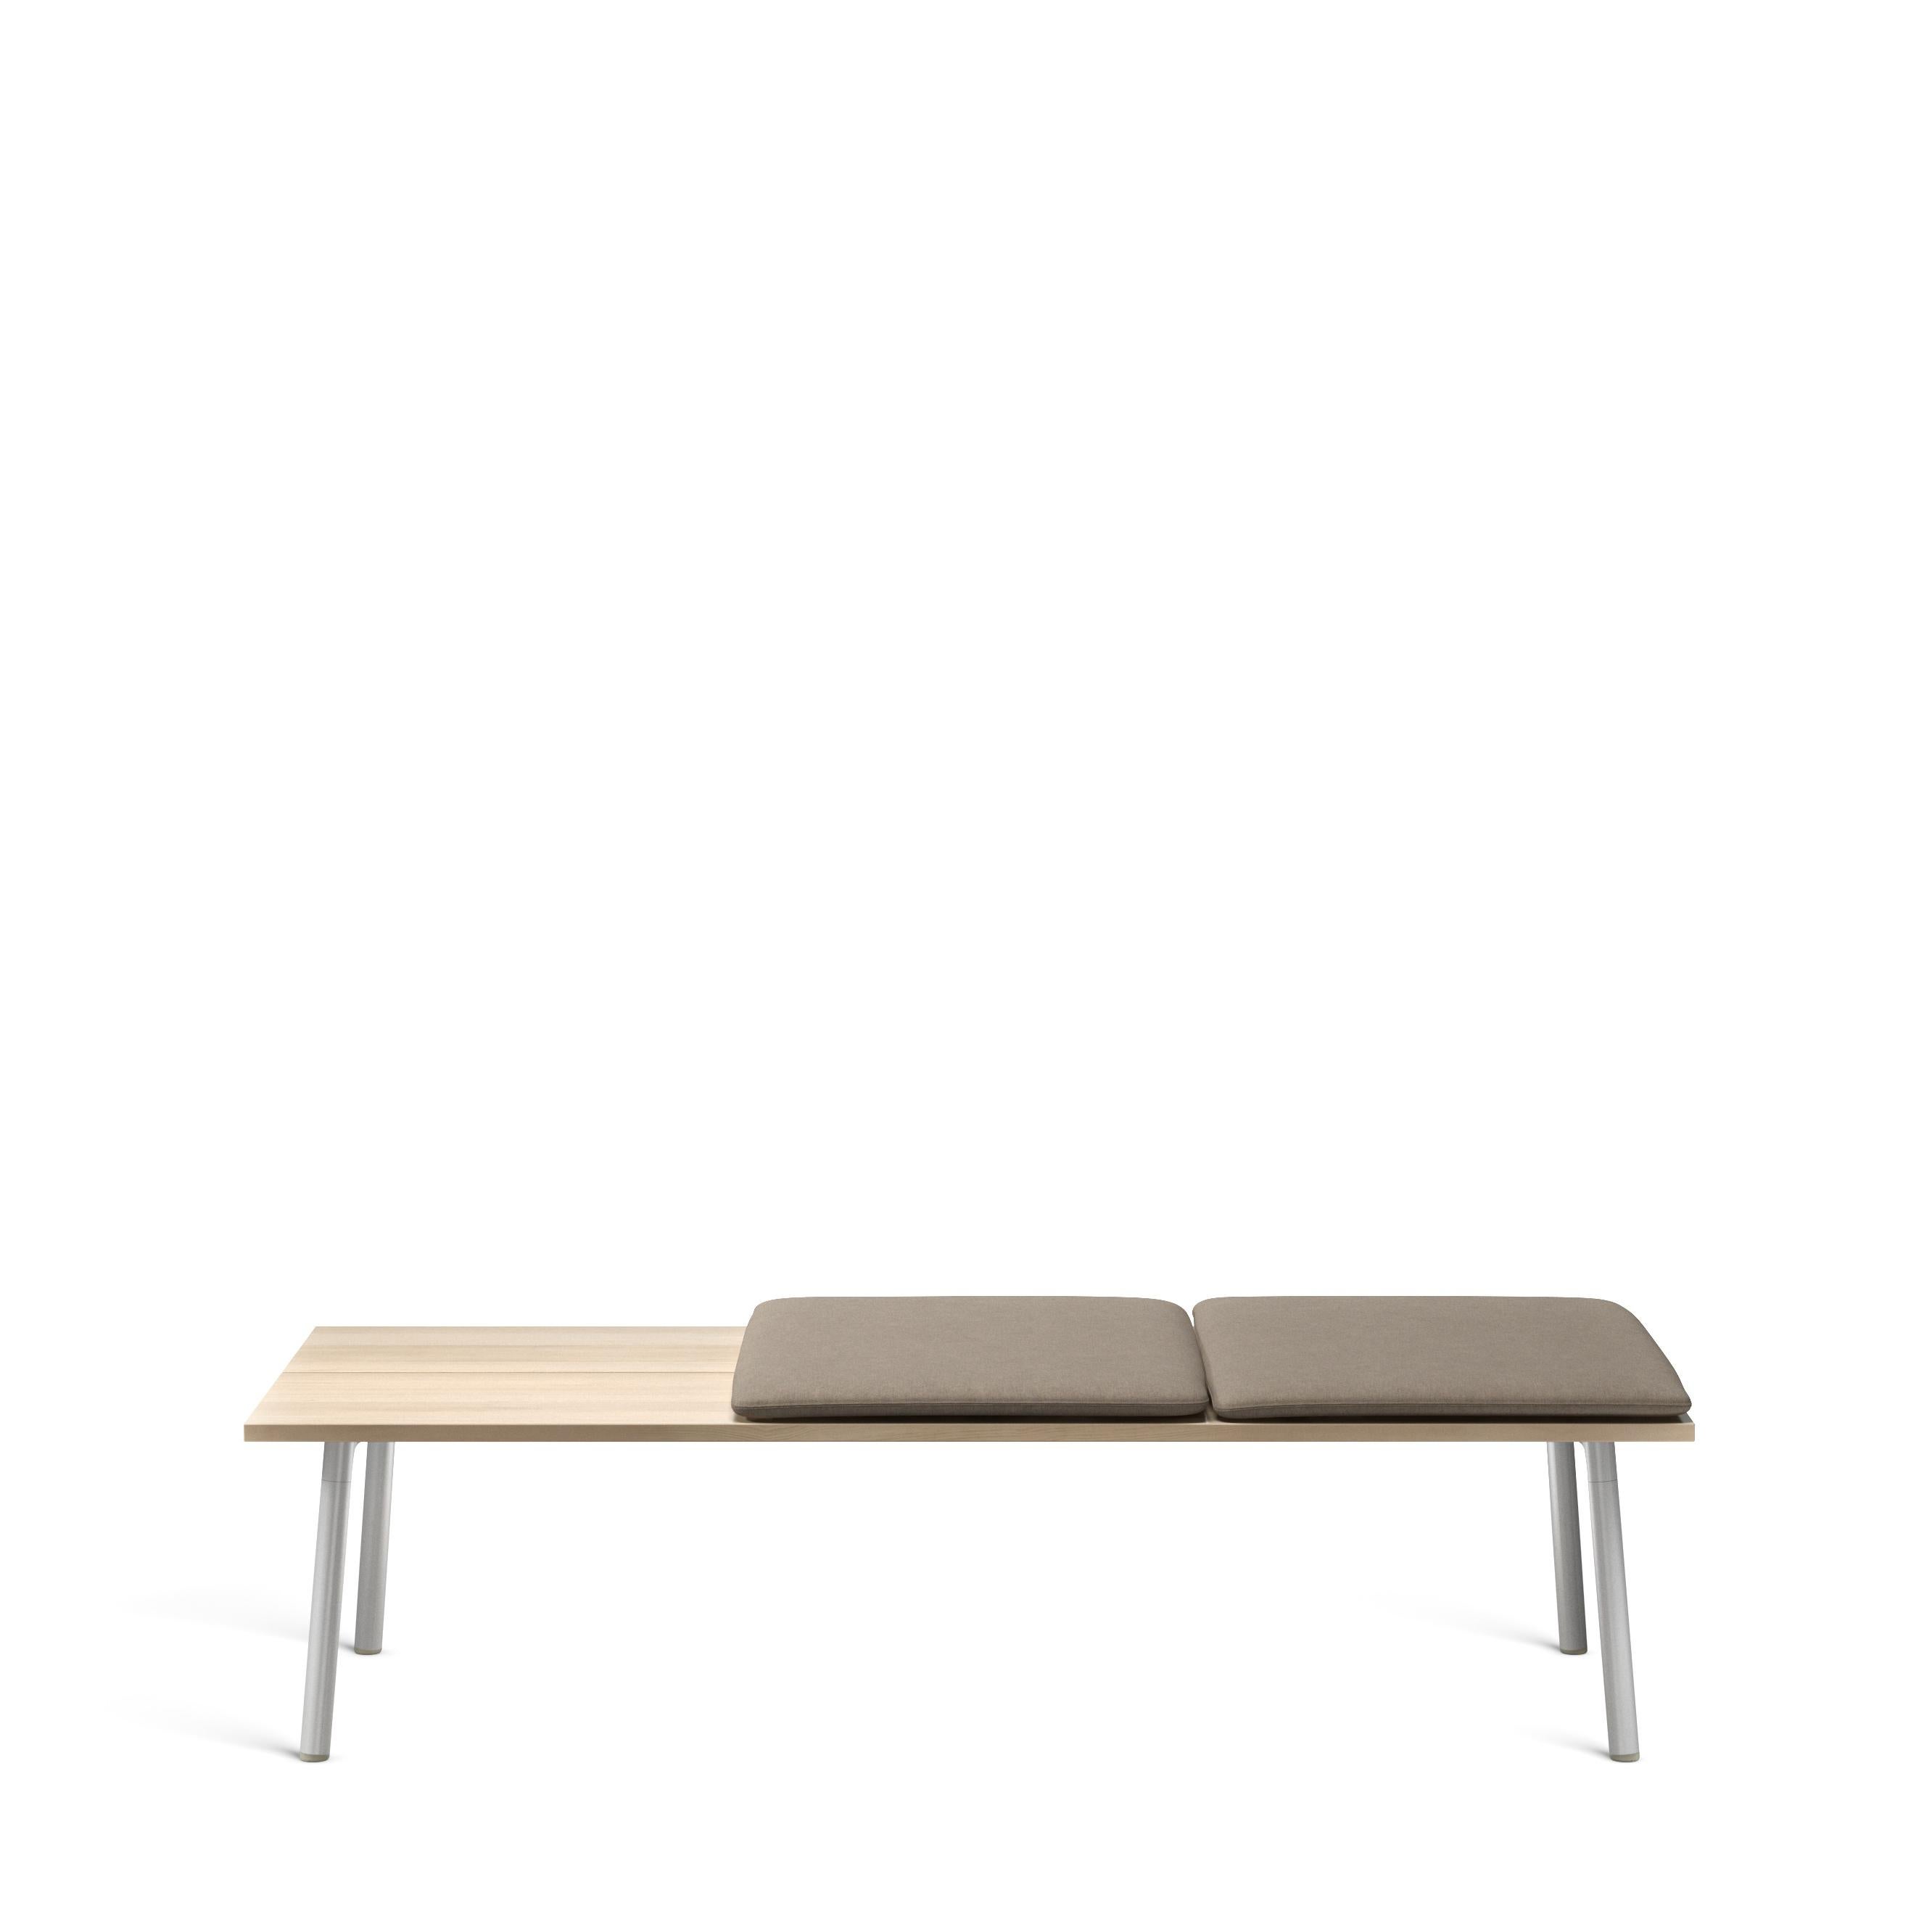 Run est une collection de tables, de bancs et d'étagères de Sam Hecht et Kim Colin, concepteurs d'objets simples et sans prétention. Run trouve sans effort un équilibre dans des paysages intérieurs et extérieurs adaptés aux rencontres, aux repas, à